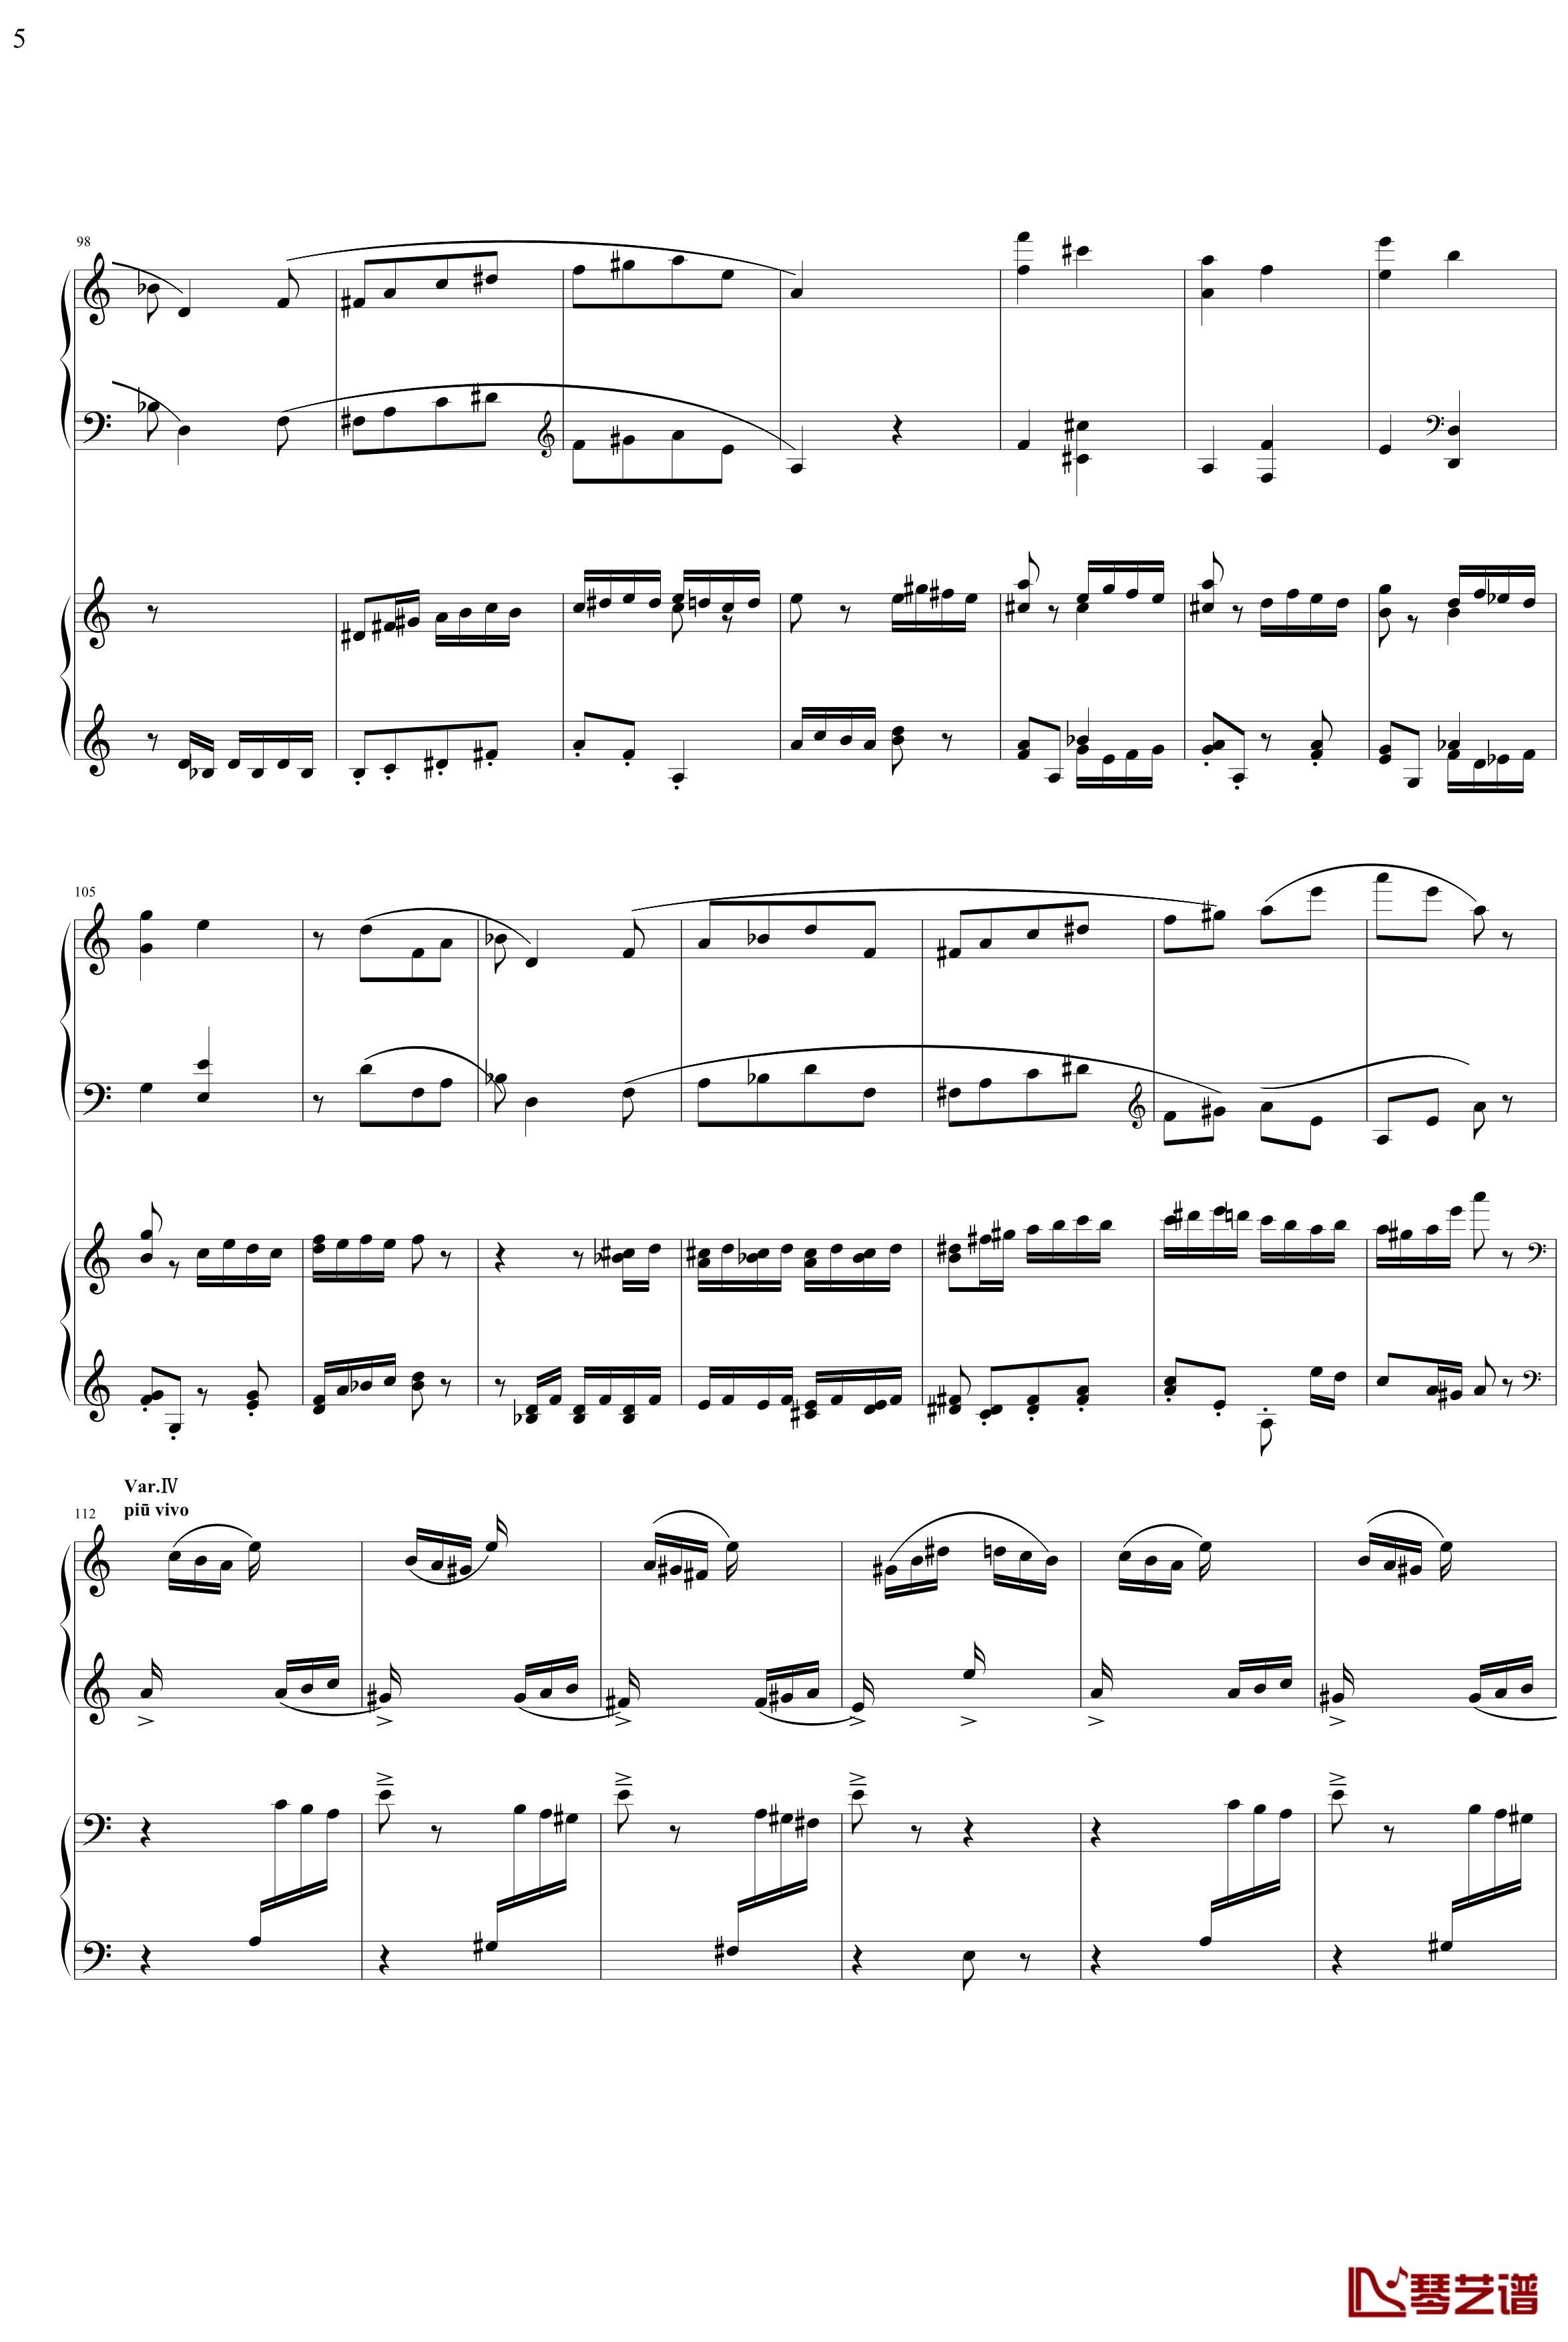 帕格尼主题狂想曲钢琴谱-1~10变奏-拉赫马尼若夫5